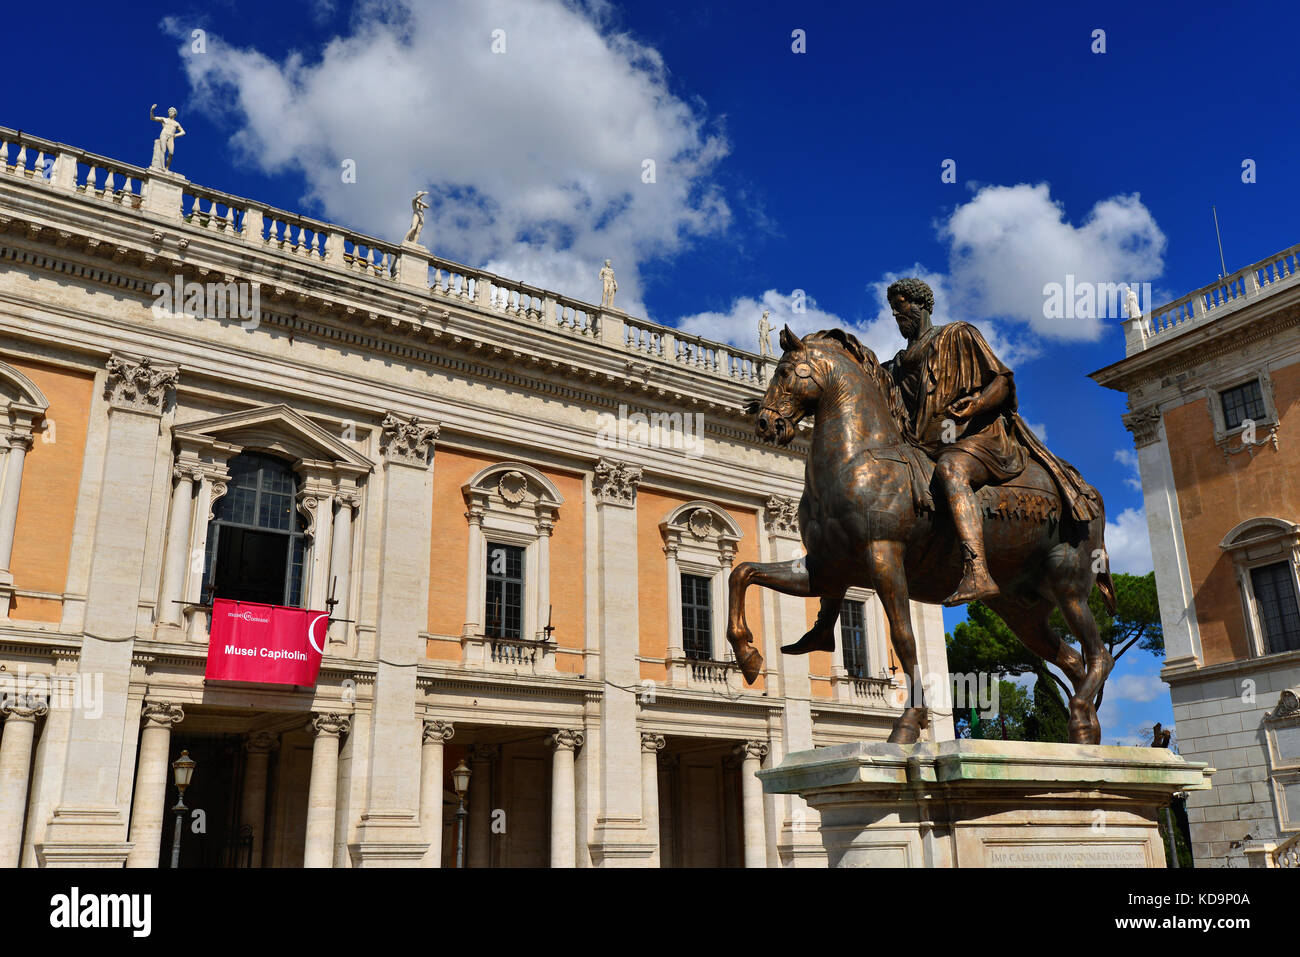 Musei Capitolini nel centro di Roma, il più antico museo pubblico in tutto il mondo, con la statua equestre di imperatore romano Marco Aurelio Foto Stock